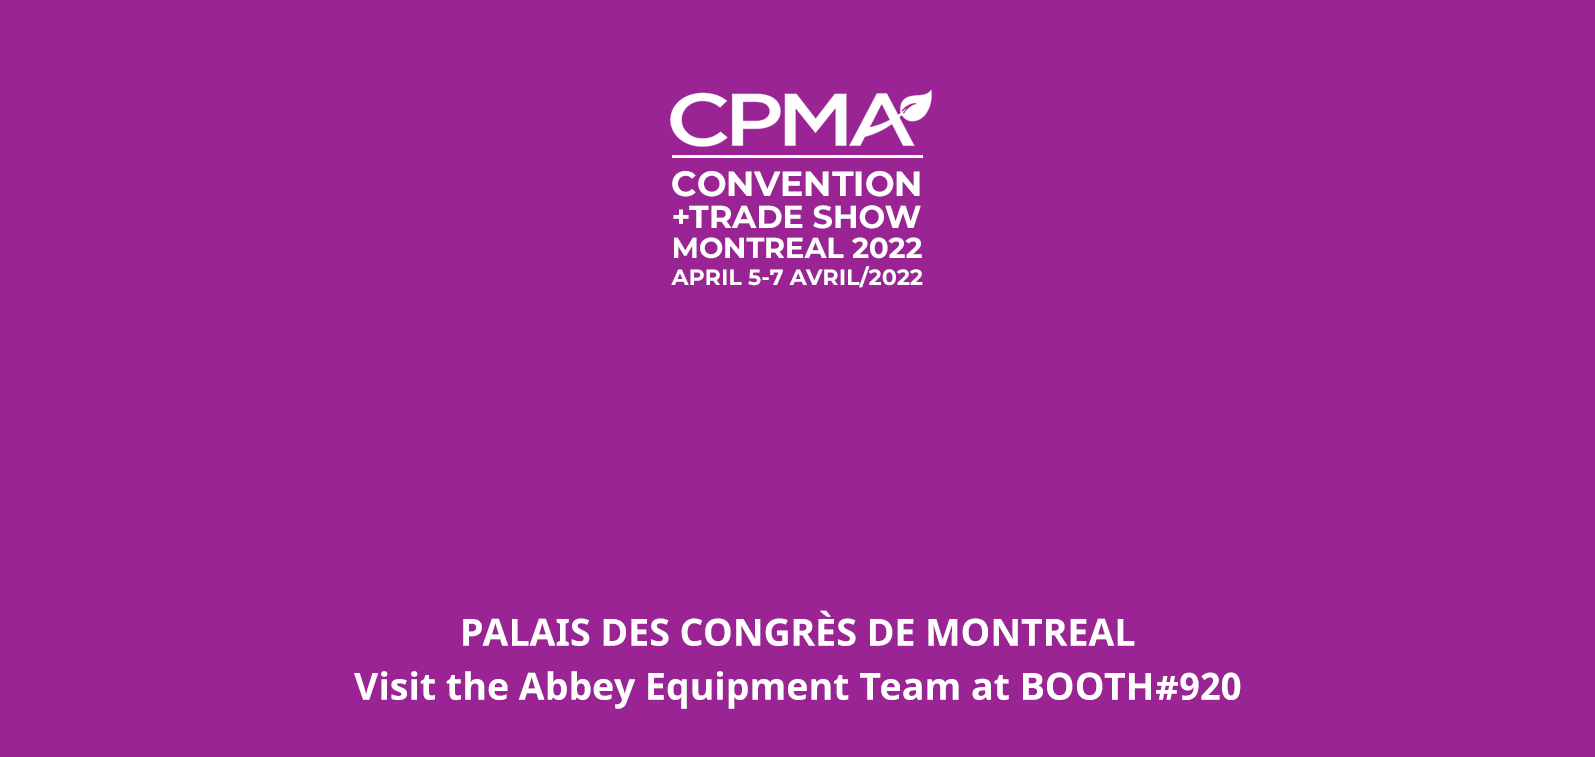 Turatti sarà presente con il suo partner canadese Abbey Equipment Solutions alla “CPMA Convention + Trade Show”